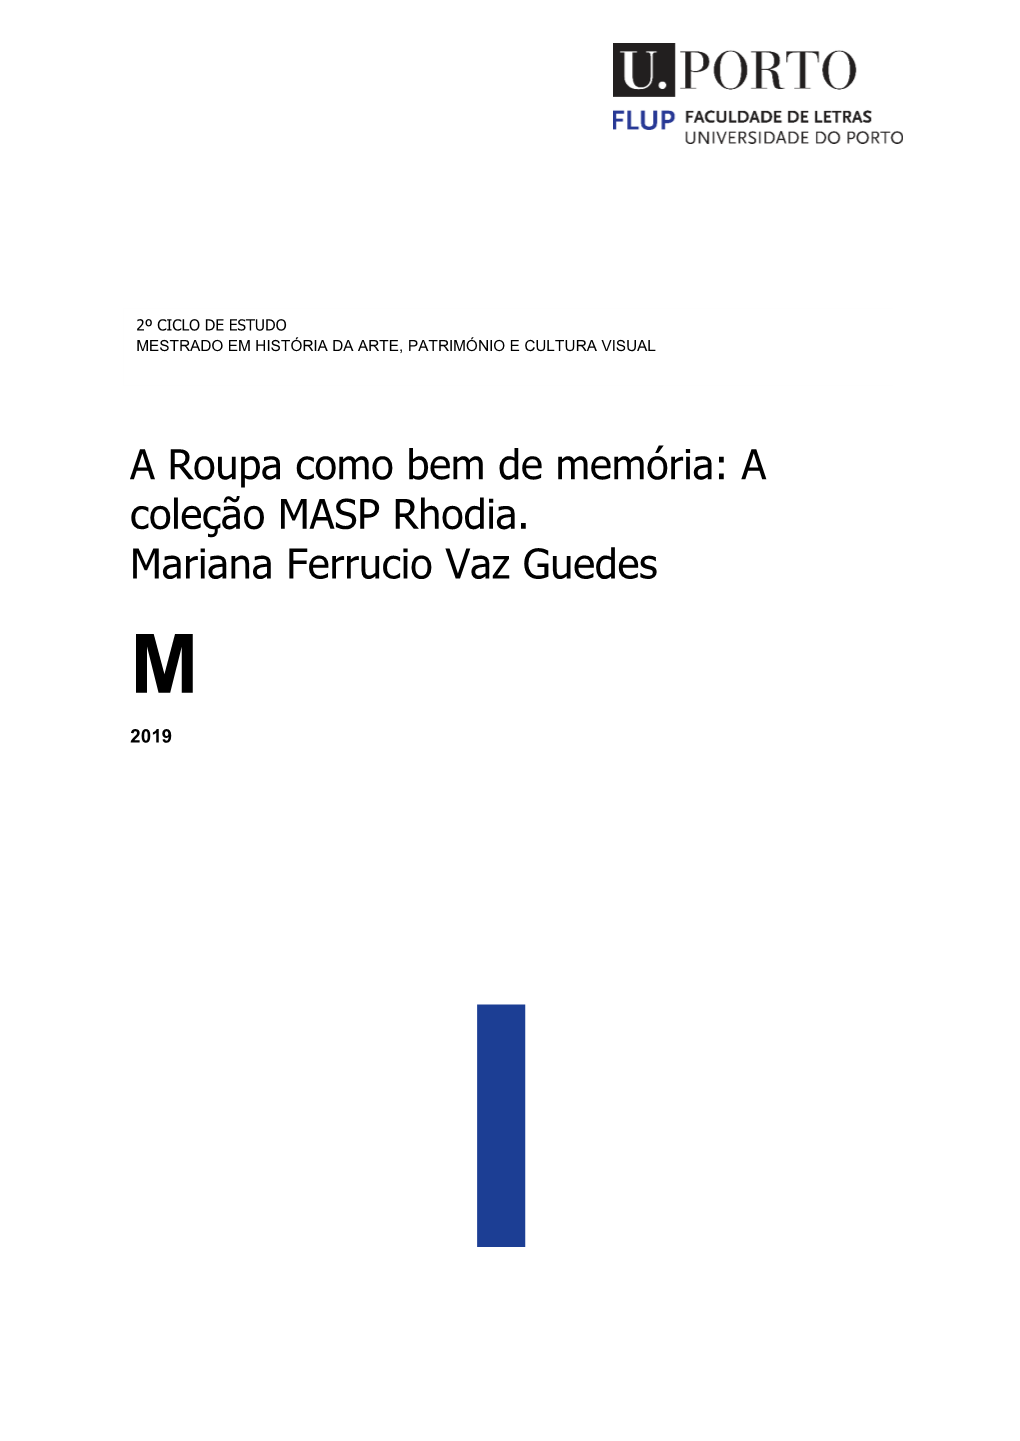 A Coleção MASP Rhodia. Mariana Ferrucio Vaz Guedes